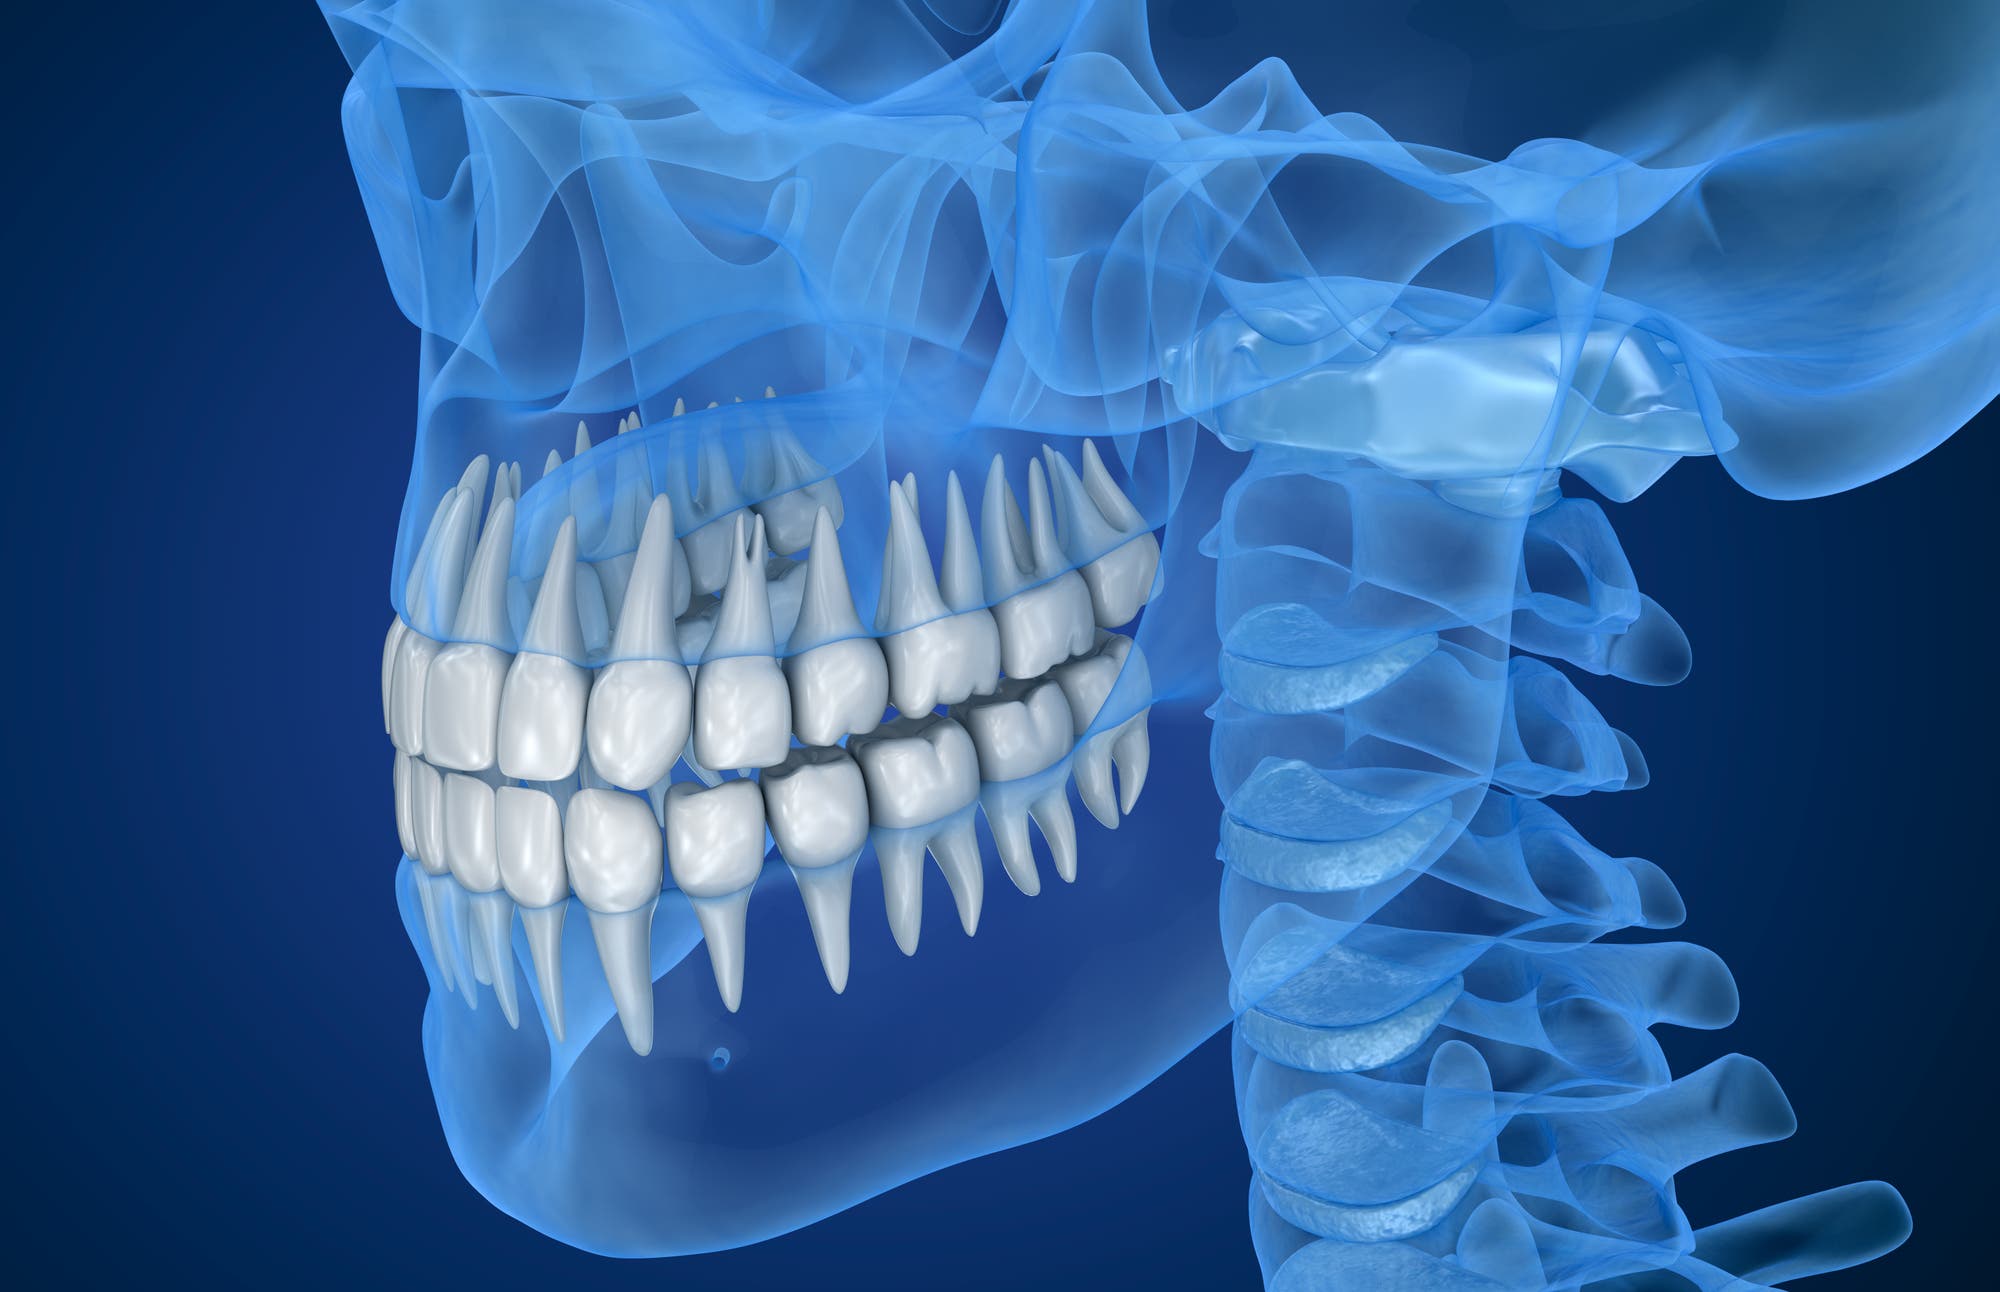 Ein transparenter Schädel mit hervorgehobenen Zähnen